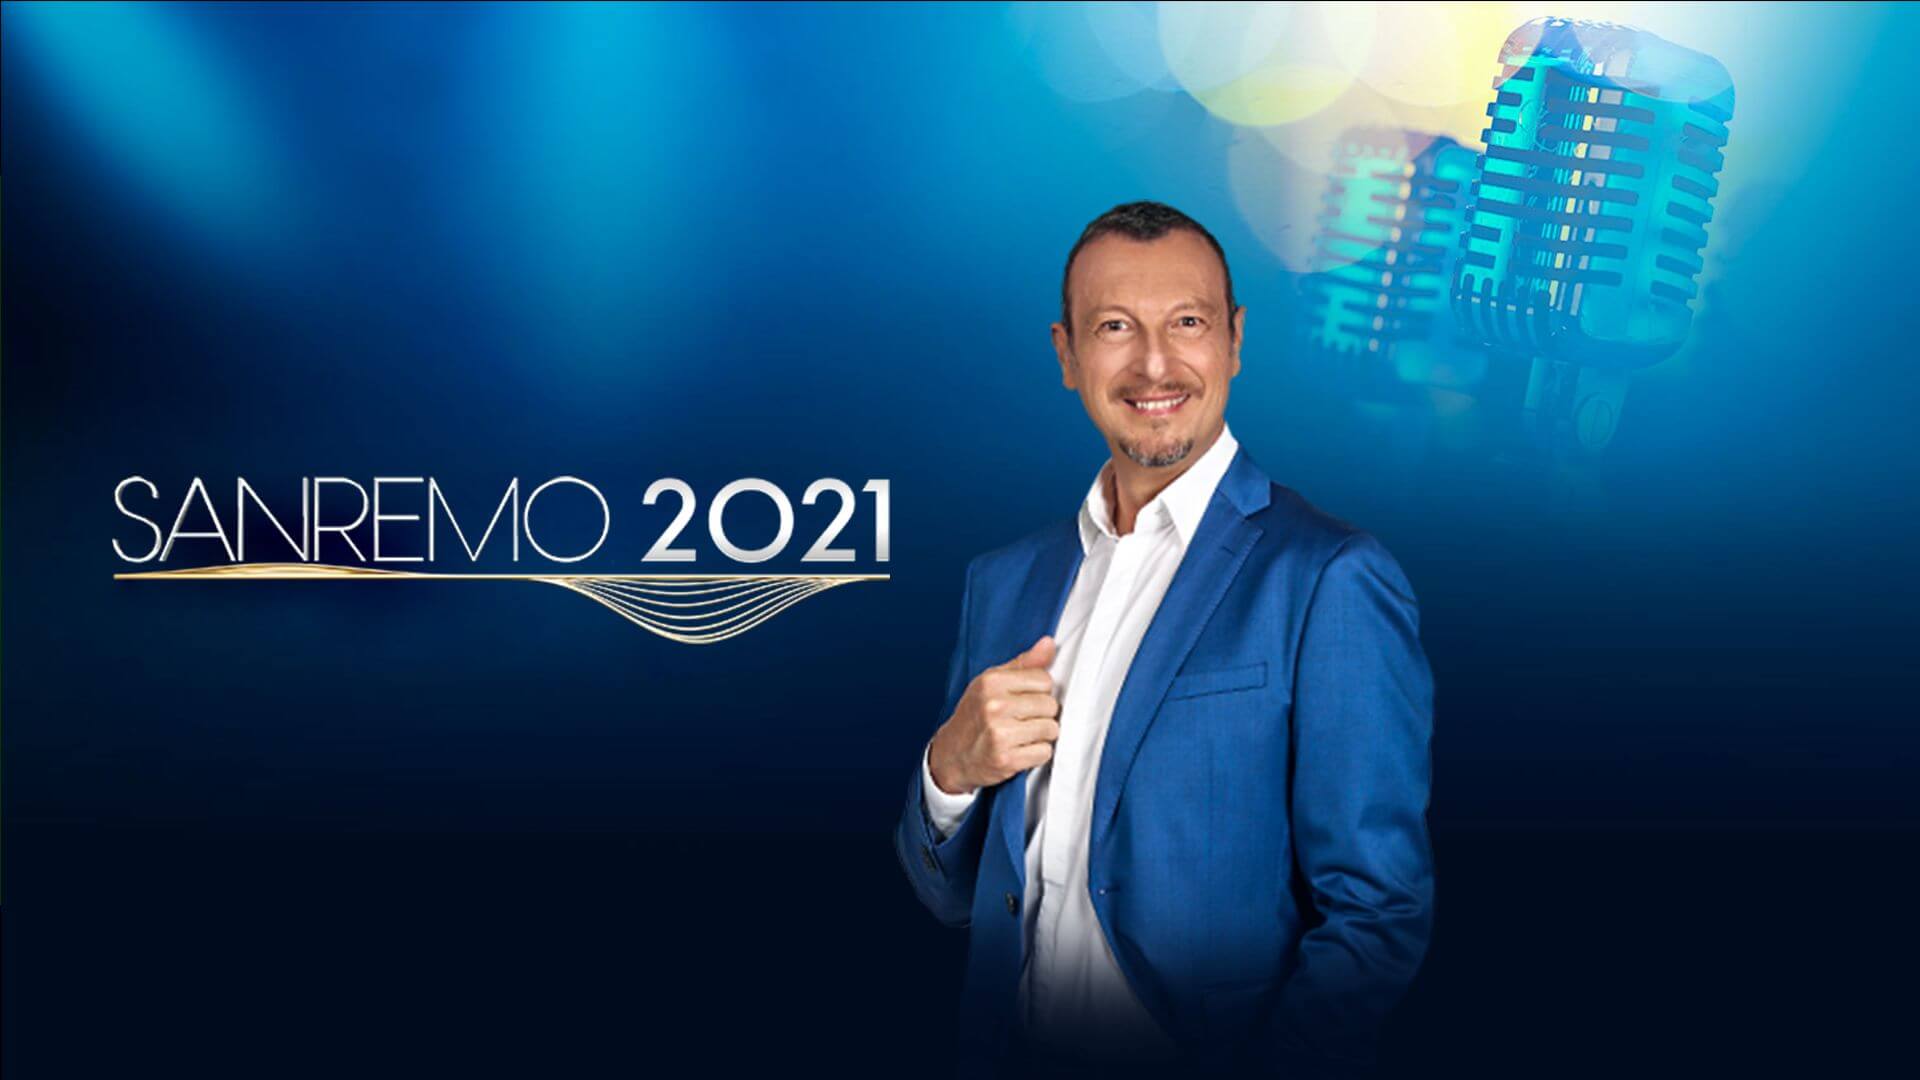 Sanremo 2021: Serena Rossi sarà la quarta co-conduttrice?